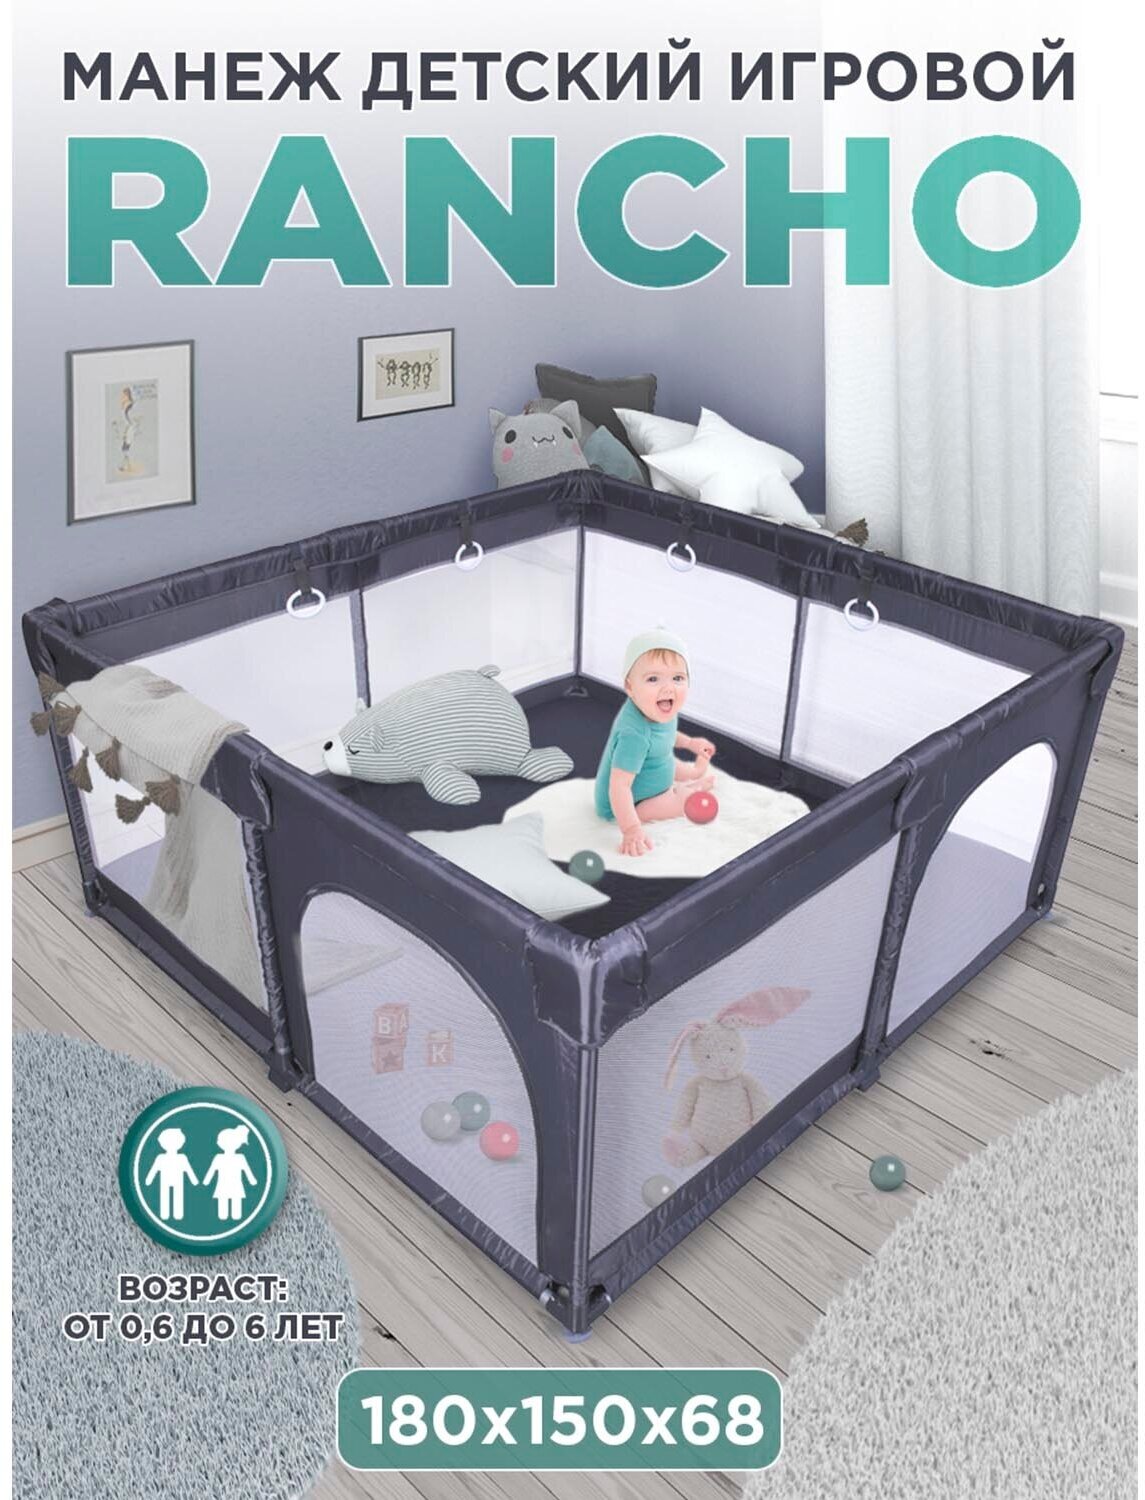 Babycare, Манеж детский игровой RANCHO 180х150см на присосках, 2 лаза на молнии, 4 ручки